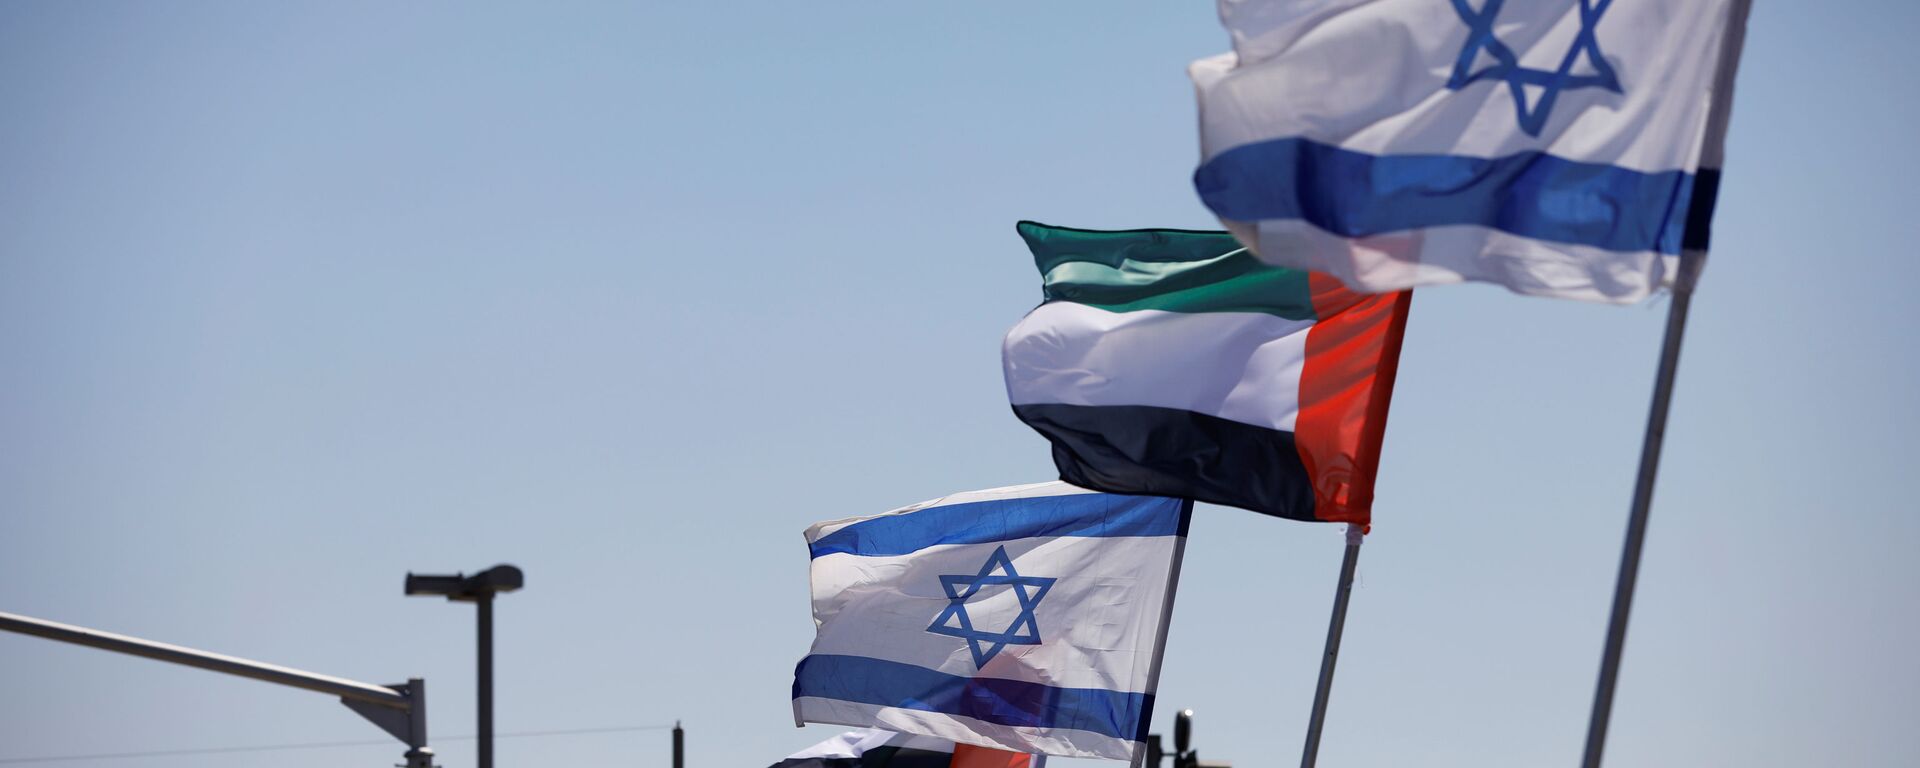 Las banderas de Israel y EAU - Sputnik Mundo, 1920, 28.08.2020